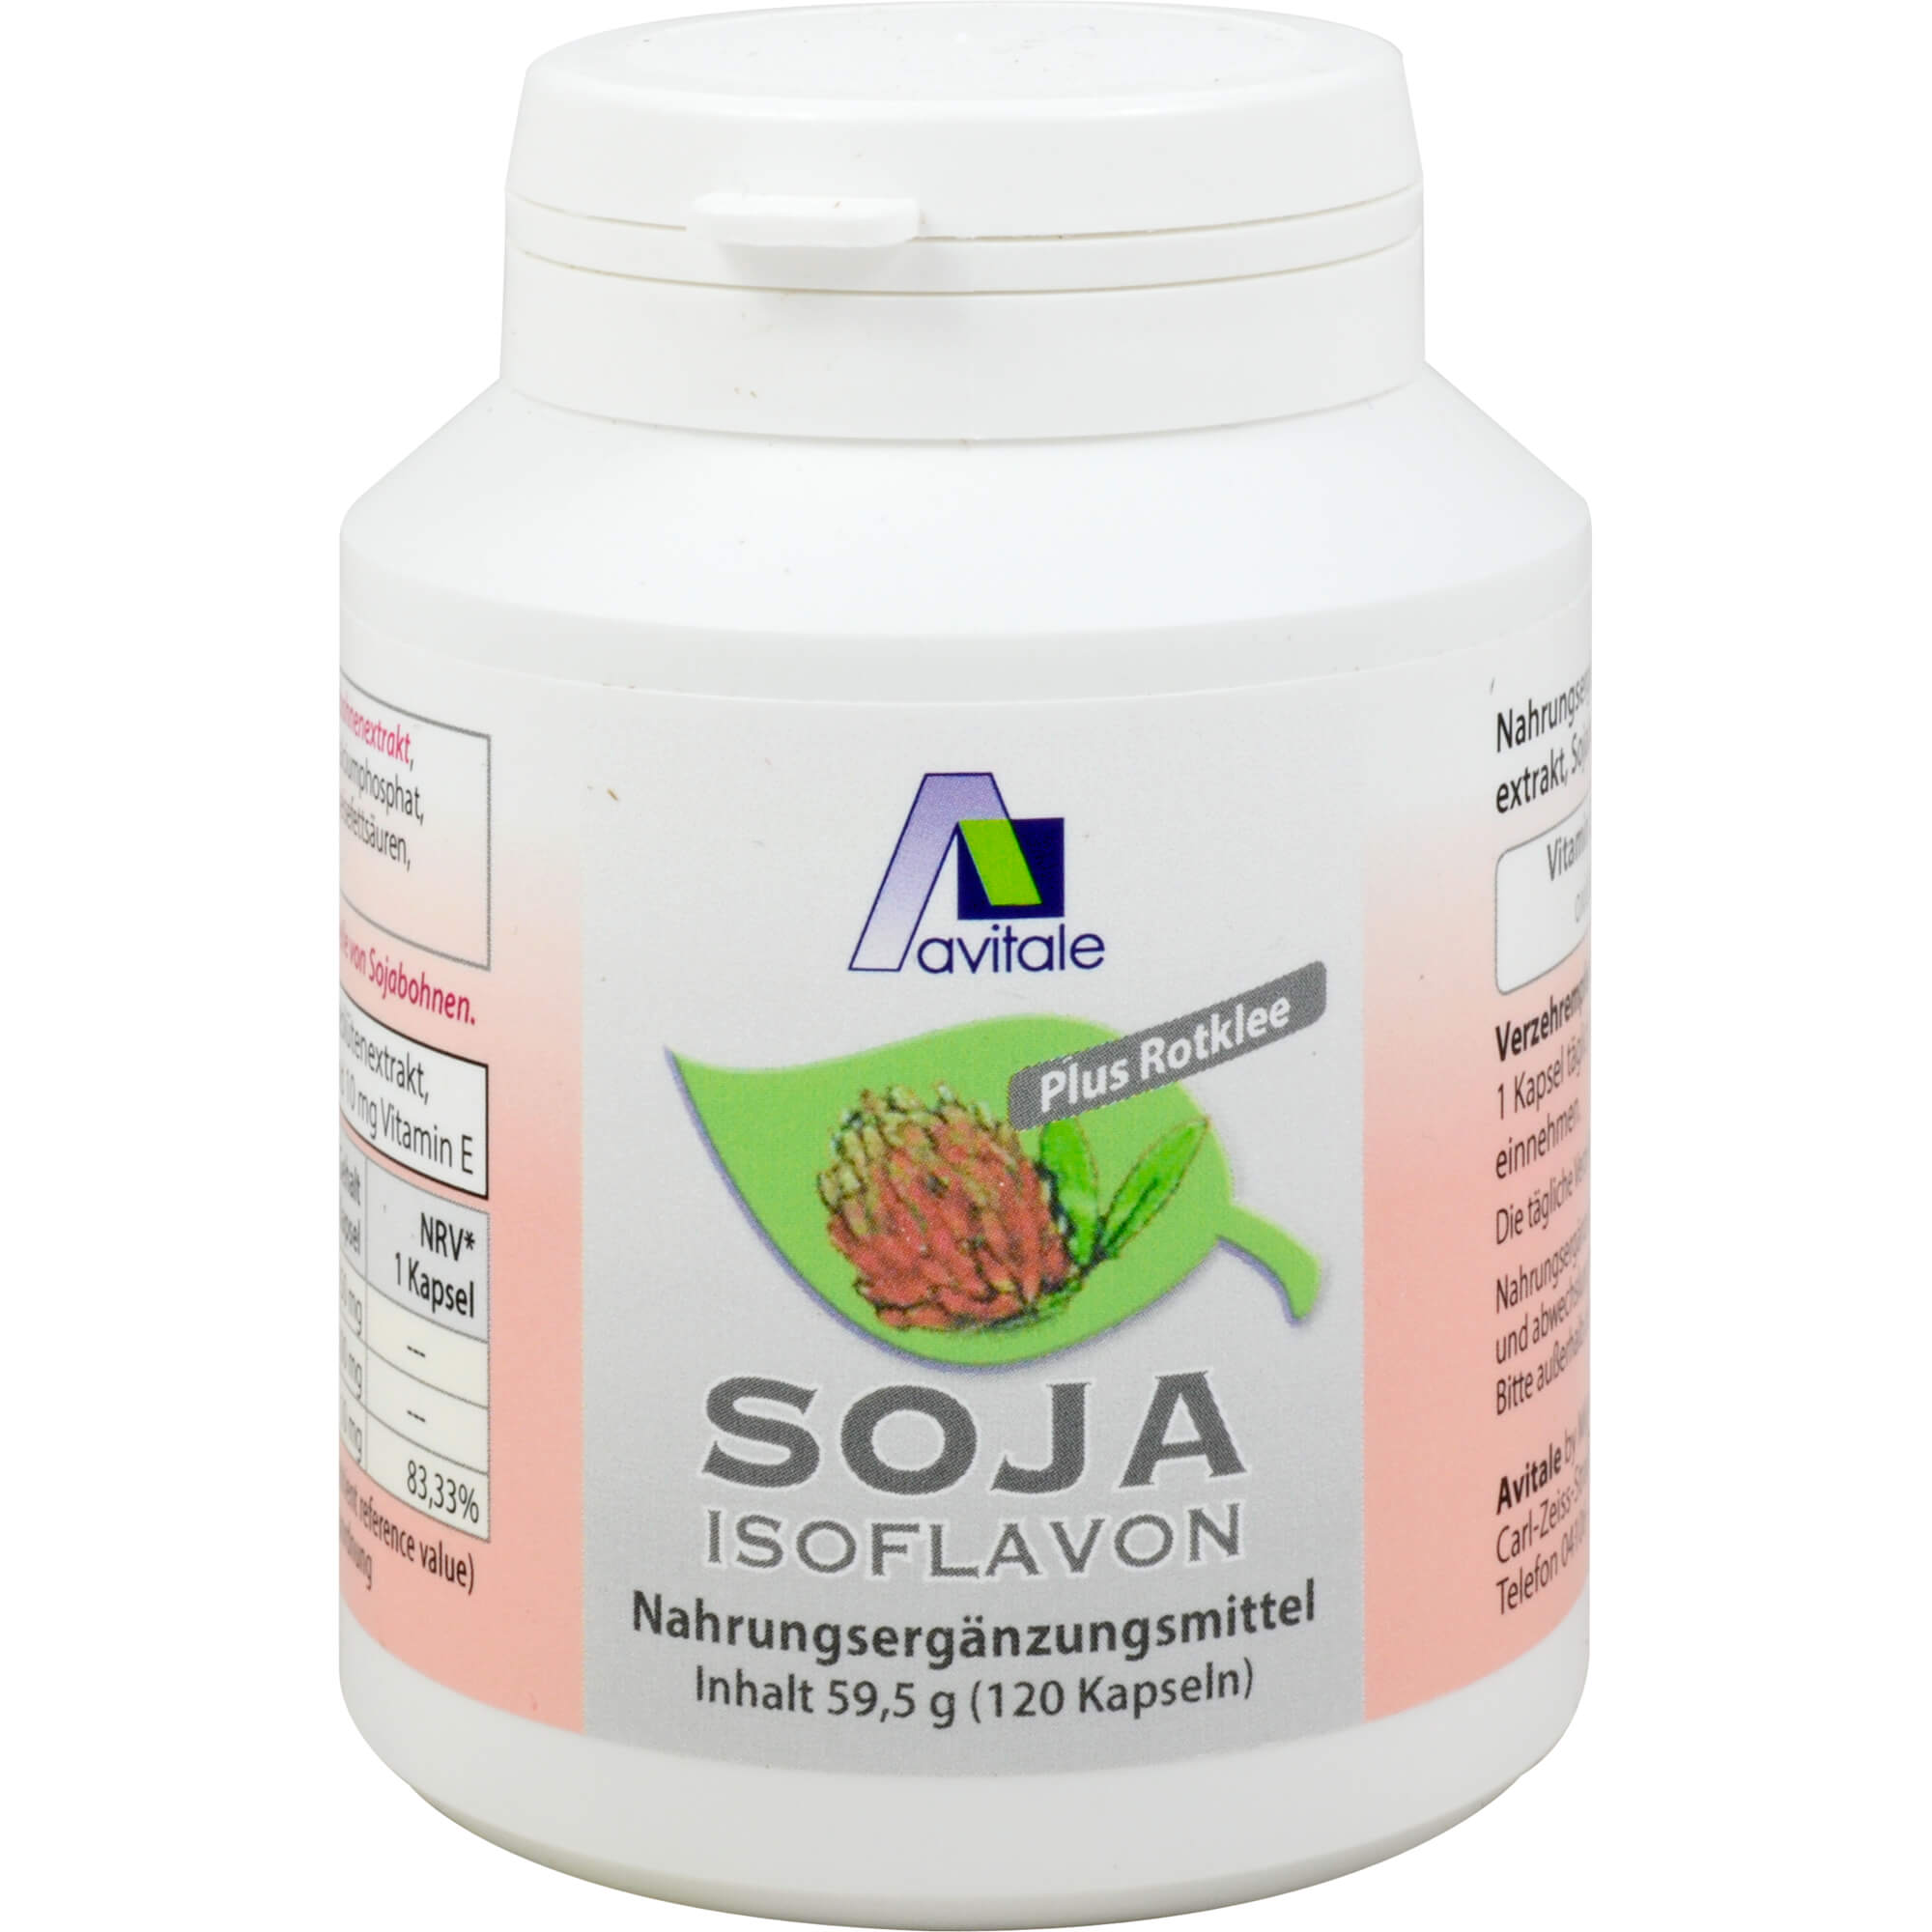 Nahrungsergänzungsmittel mit Soja-Isoflavon-Extrakt, Rotklee Extrakt und Vitamin E.